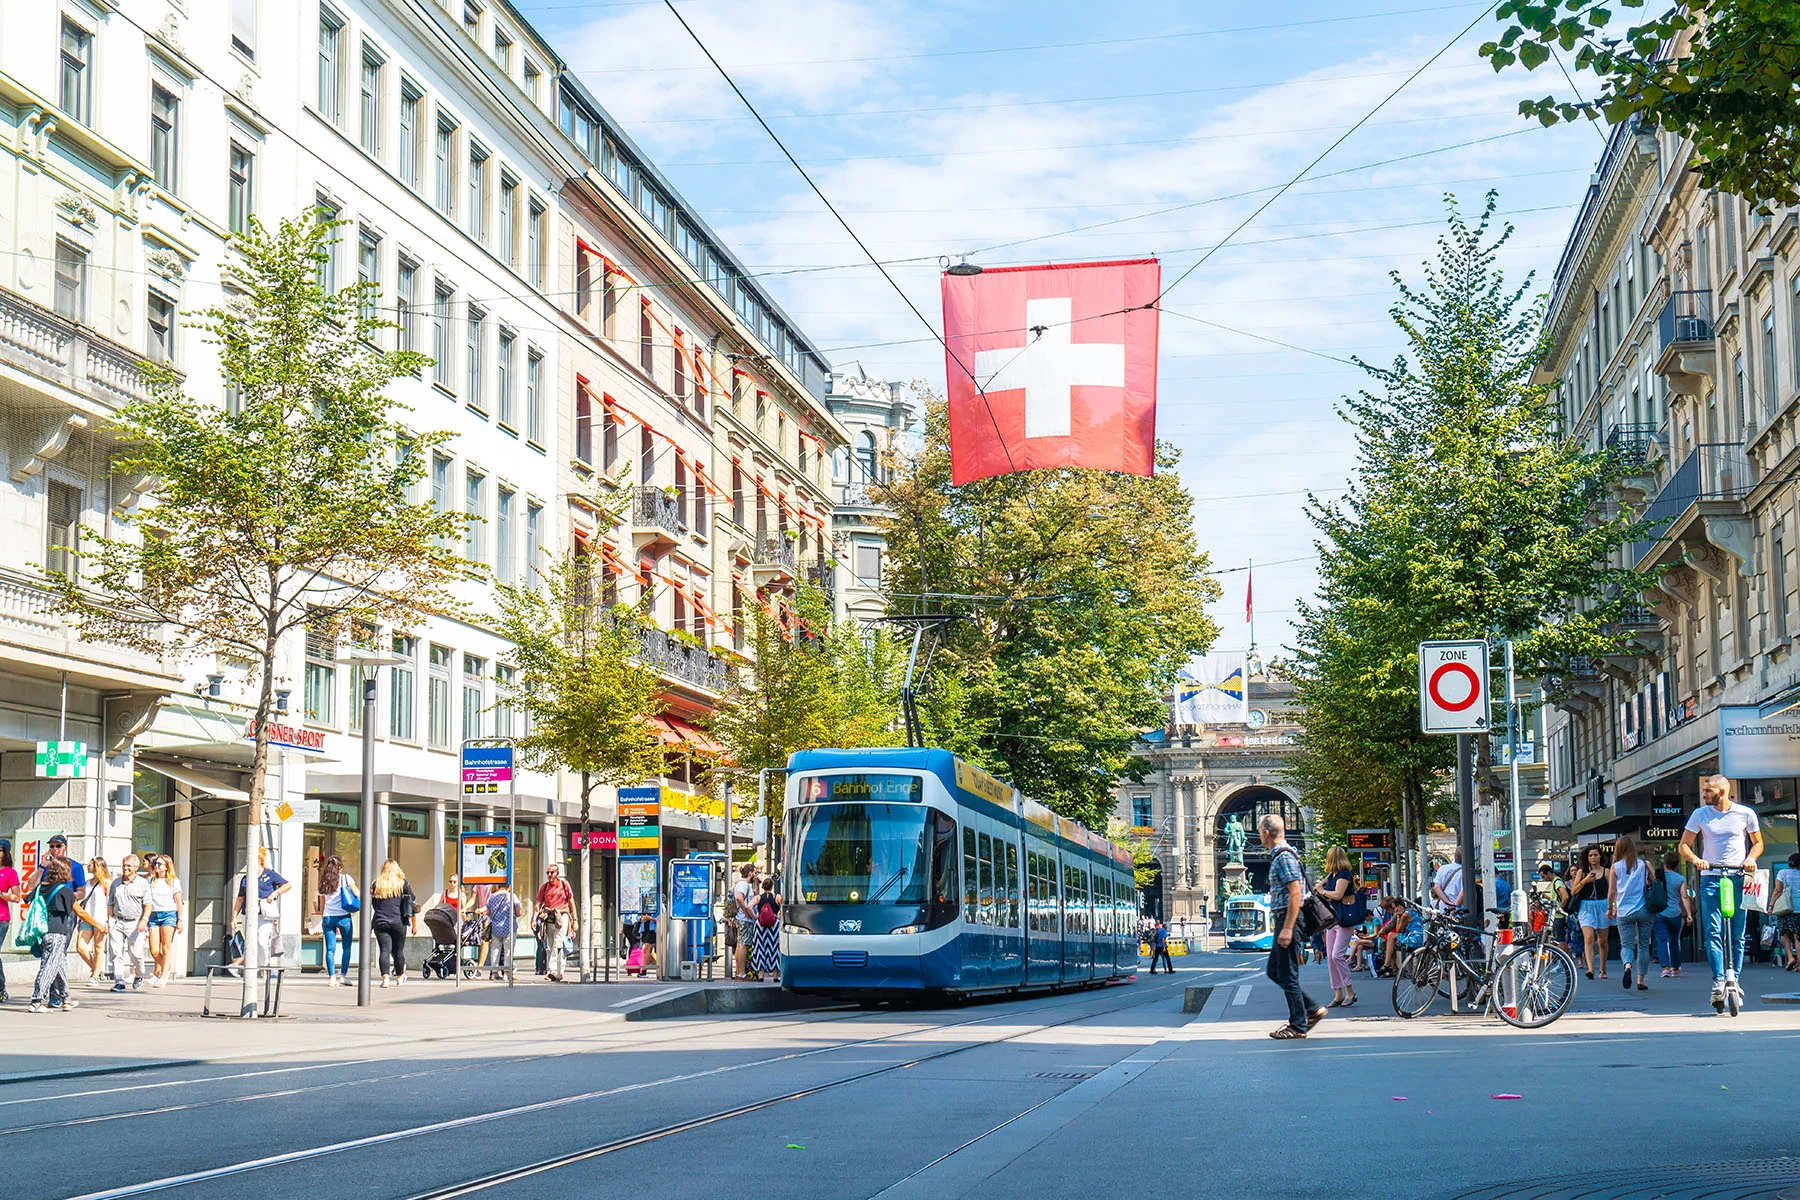 Zurich street scene